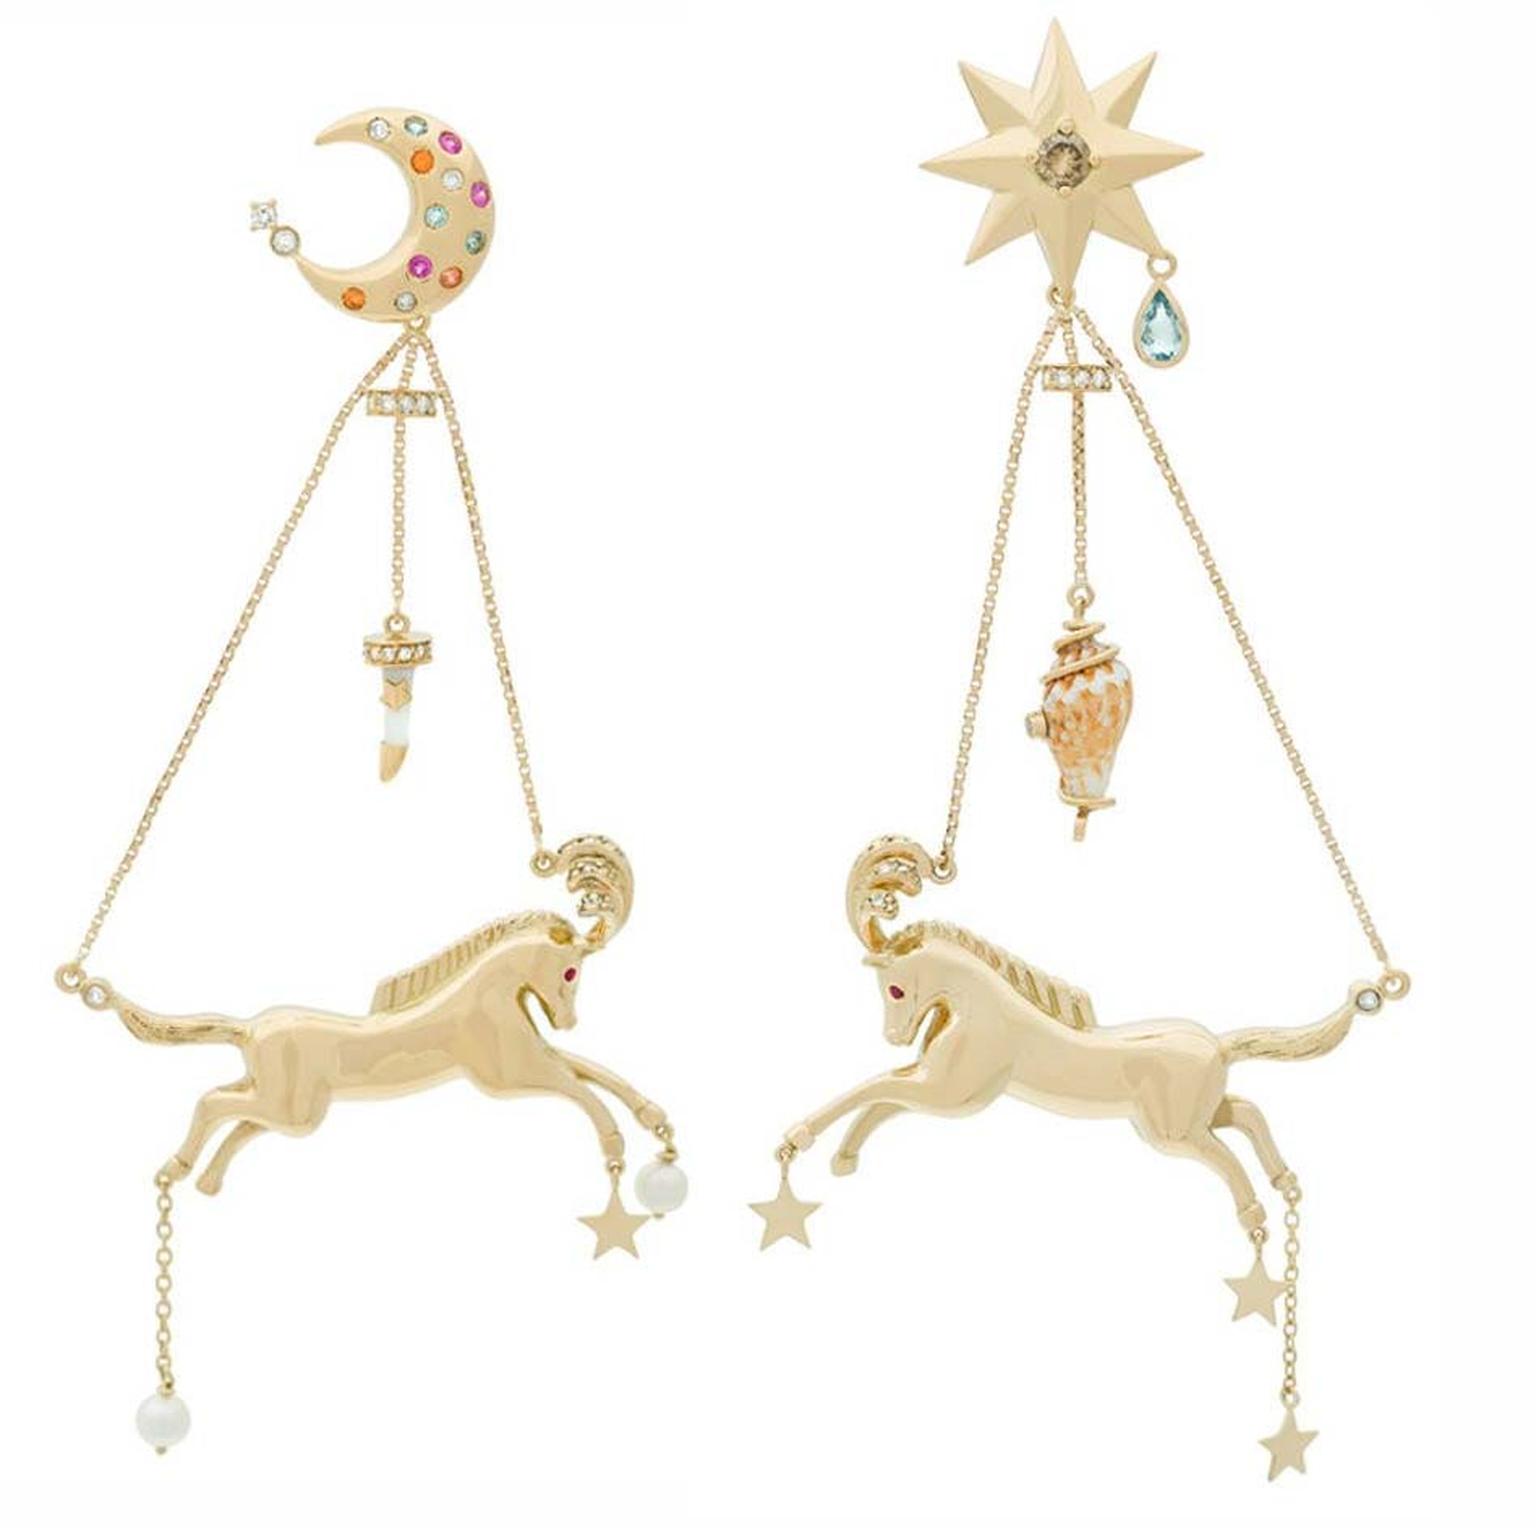 Aron & Hirsch Circus earrings